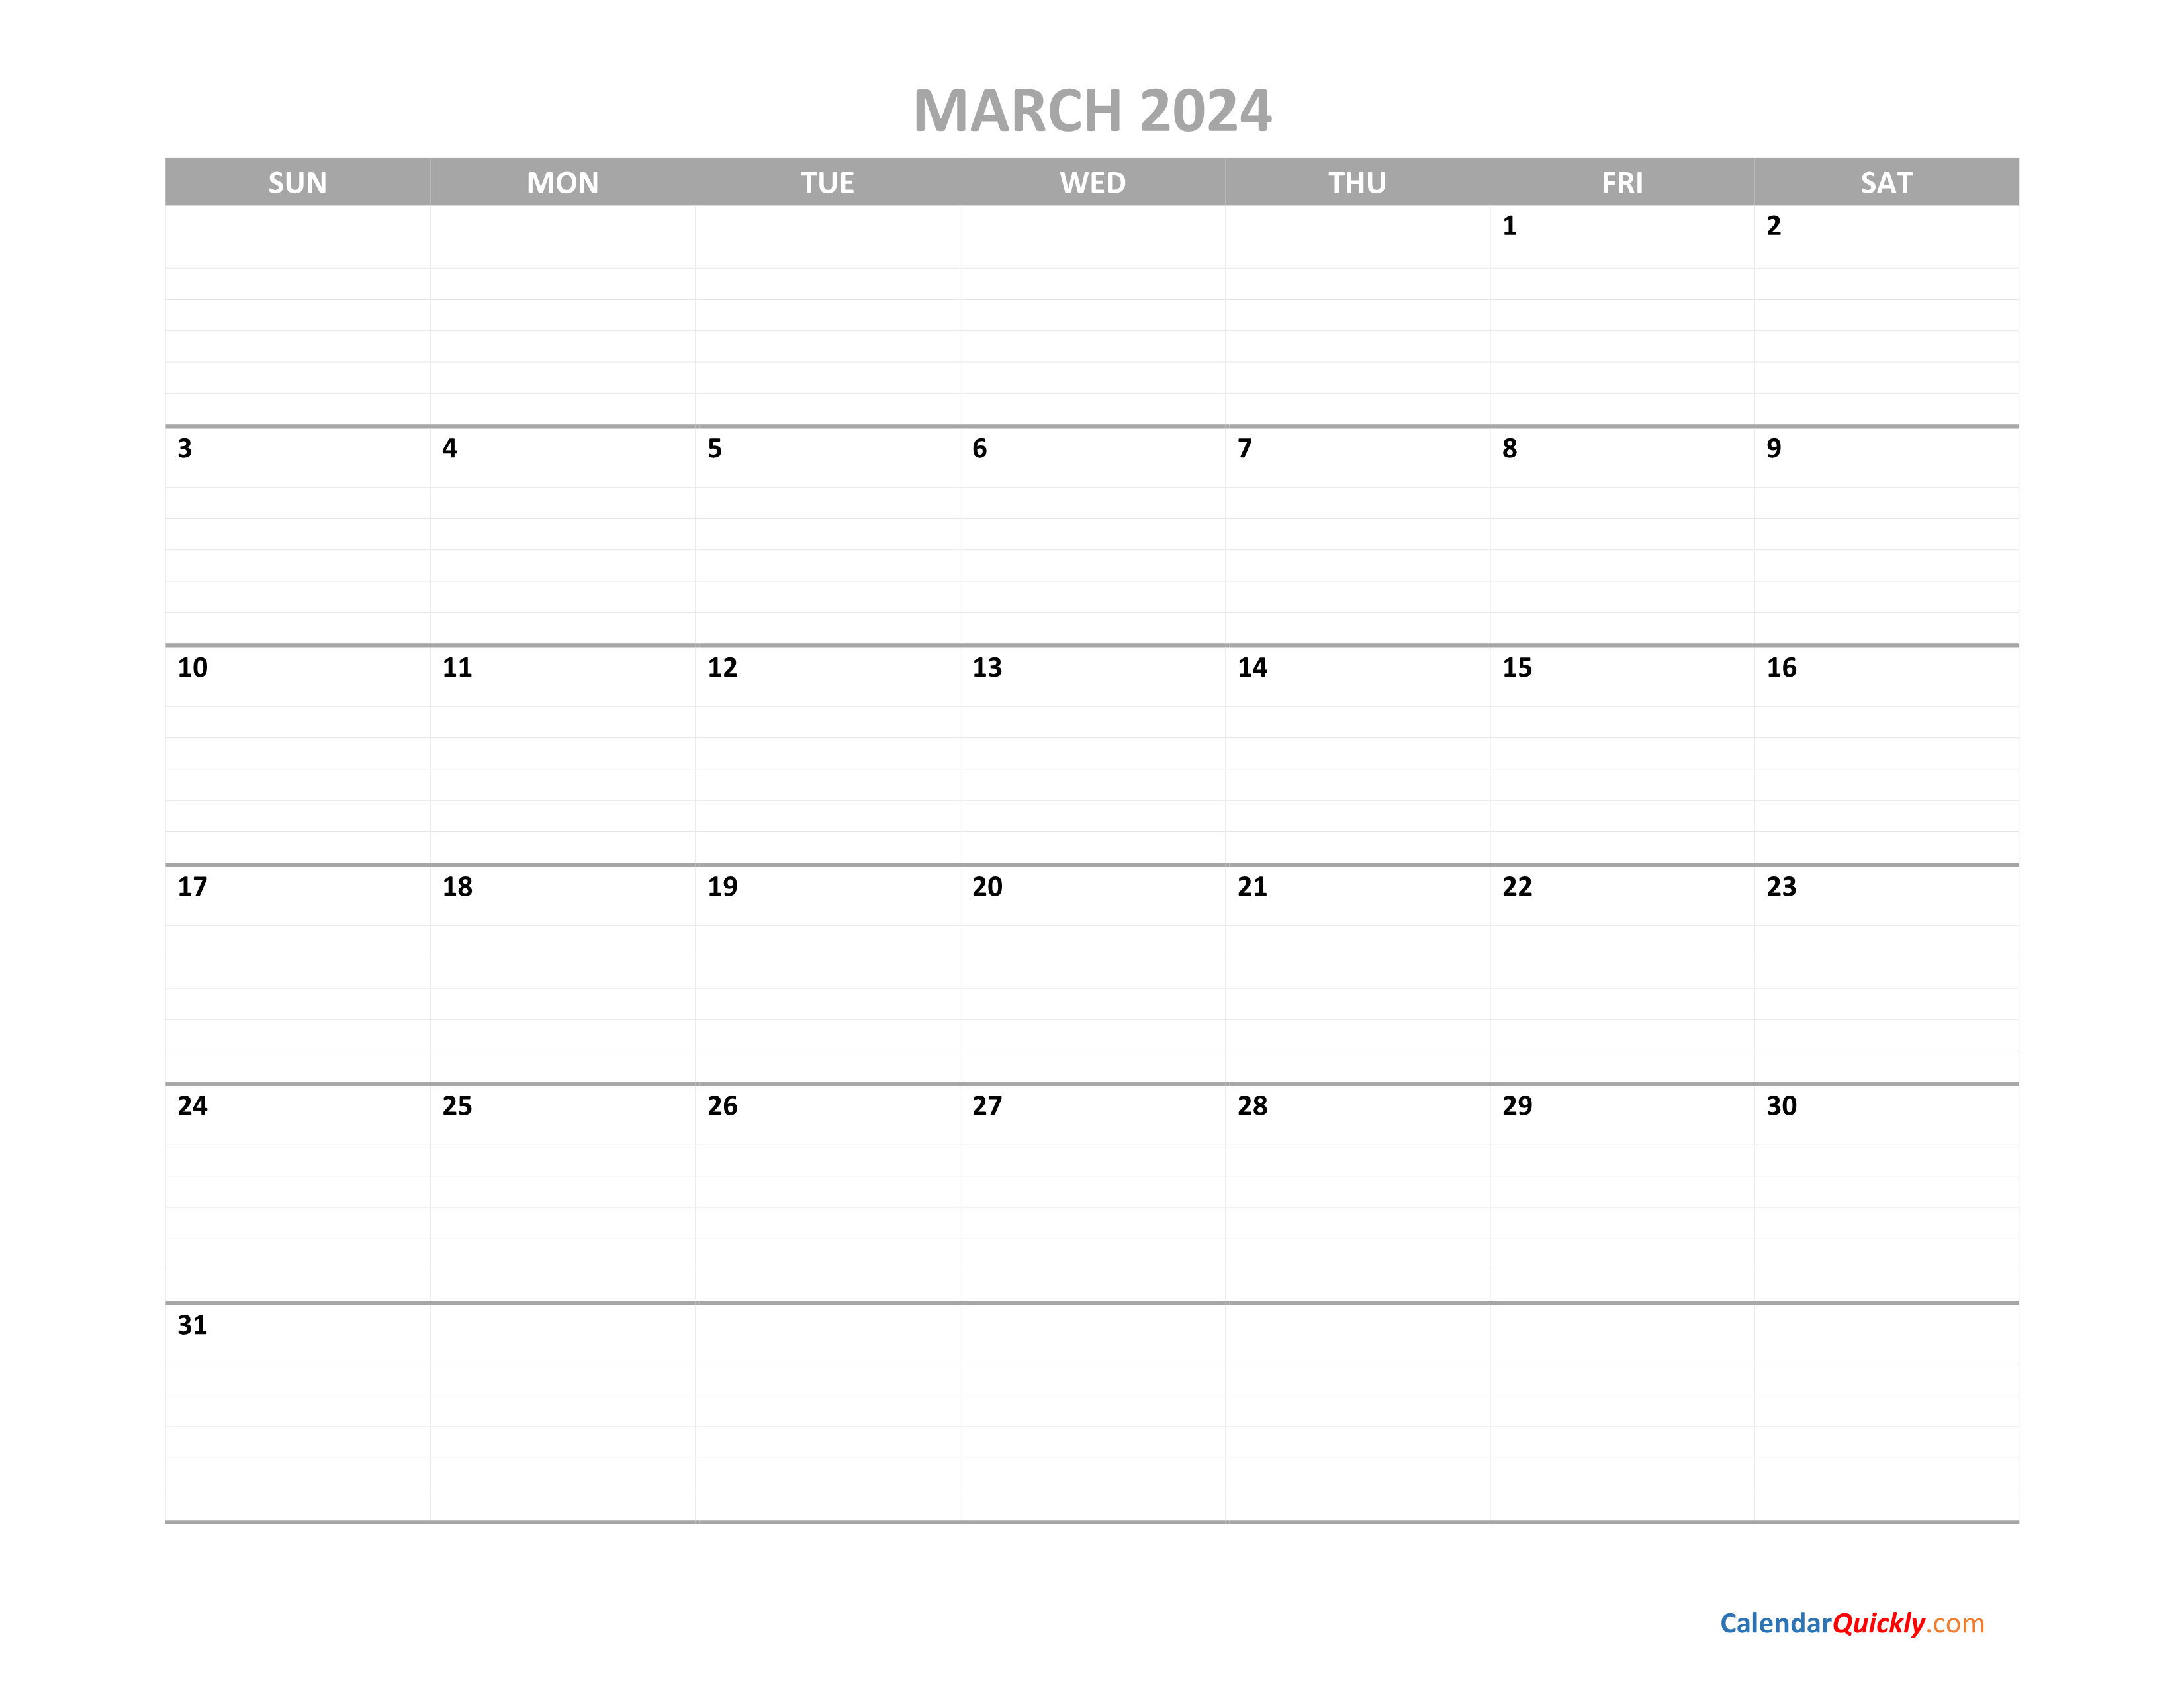 March Calendar 2024 Printable | Calendar Quickly